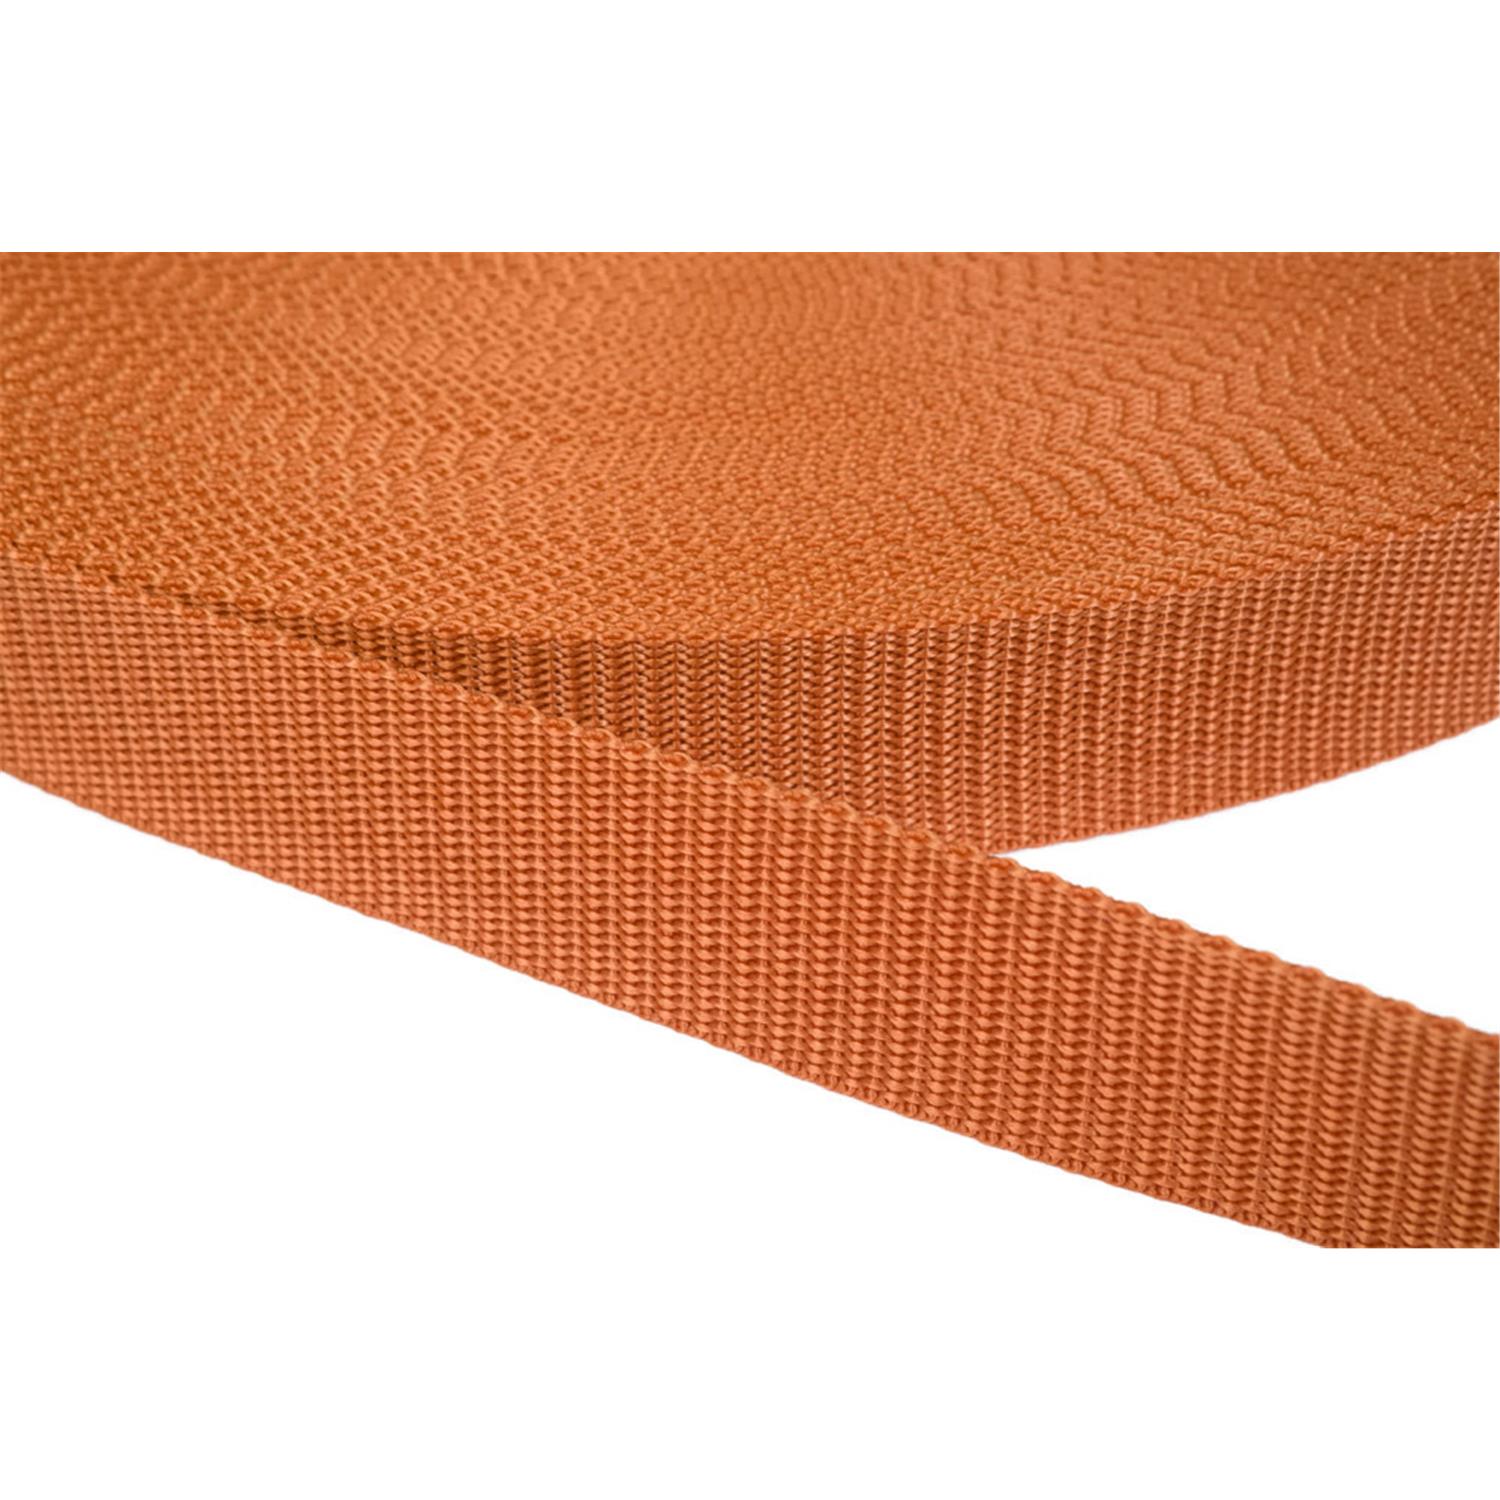 Gurtband 50mm breit aus Polypropylen in 41 Farben 05 - ockerbraun 6 Meter